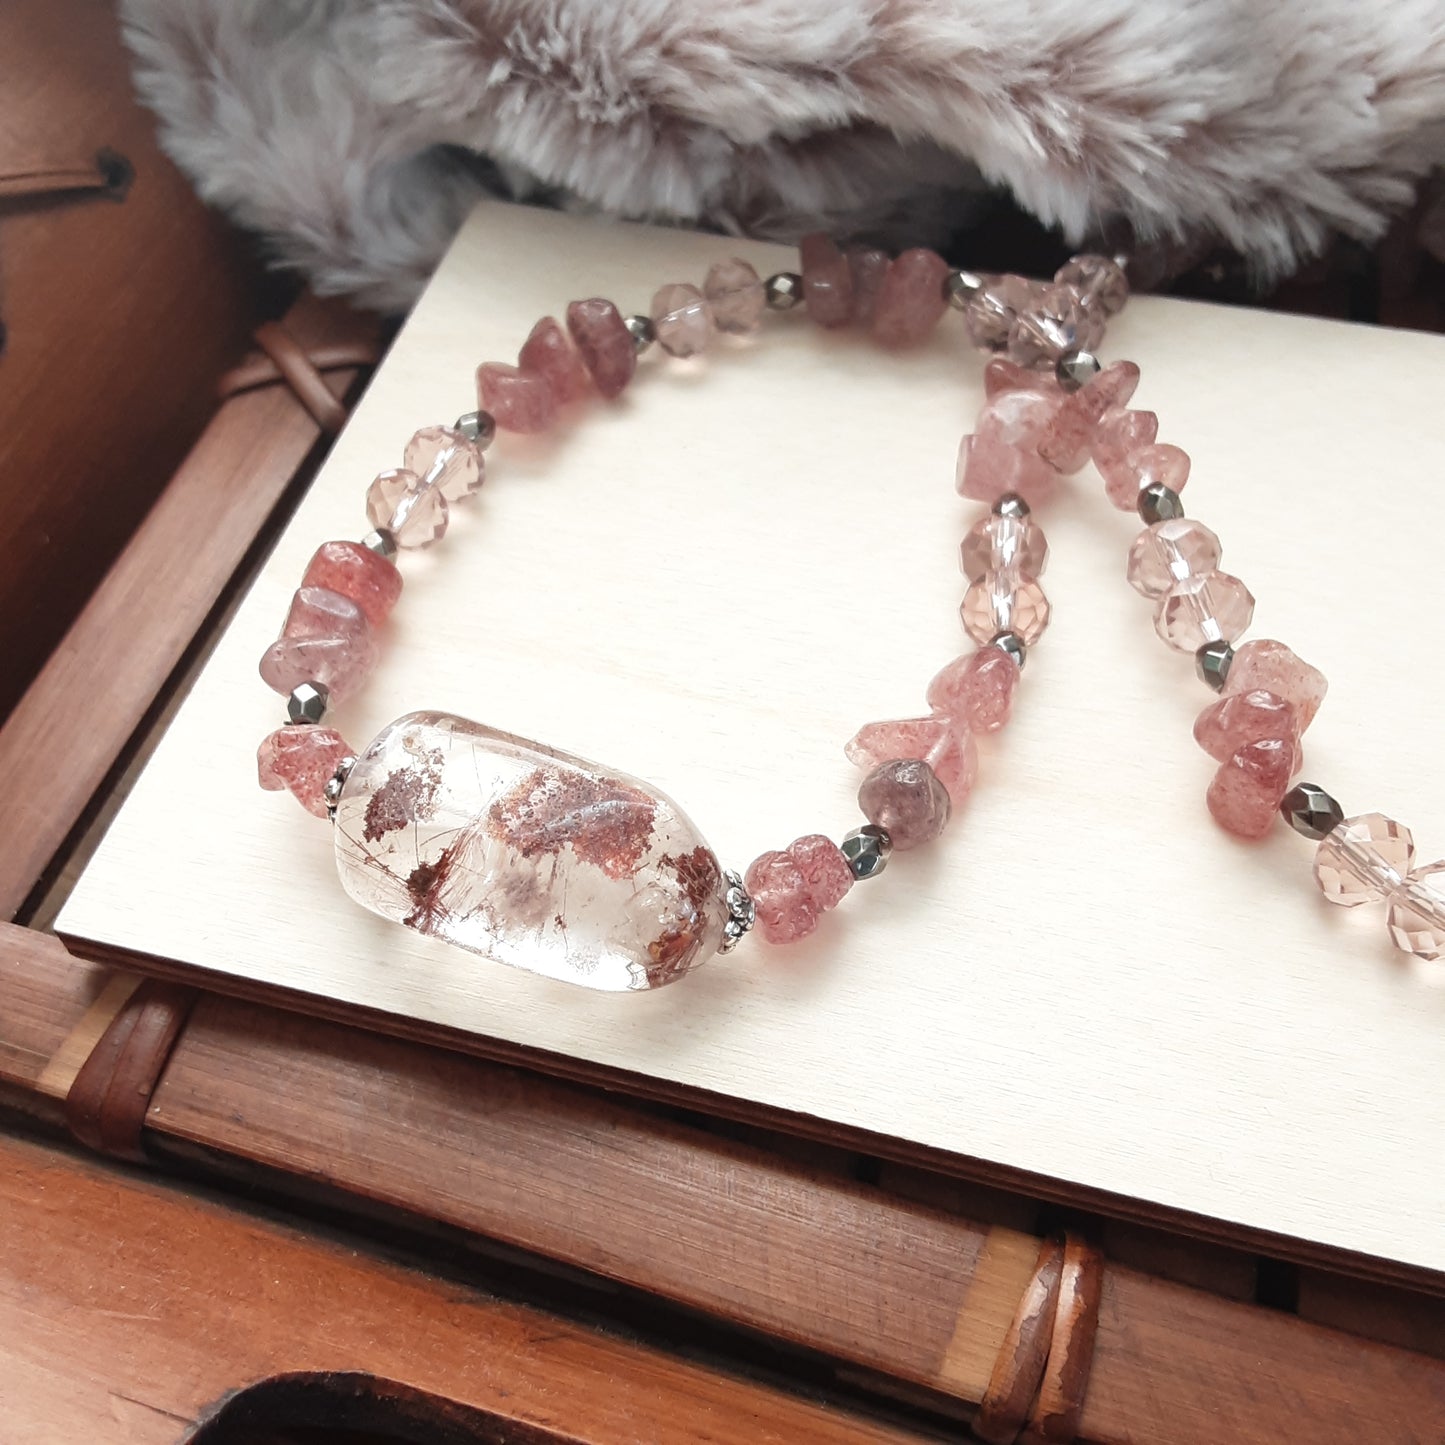 Rutilated Quartz necklace with Strawberry Quartz